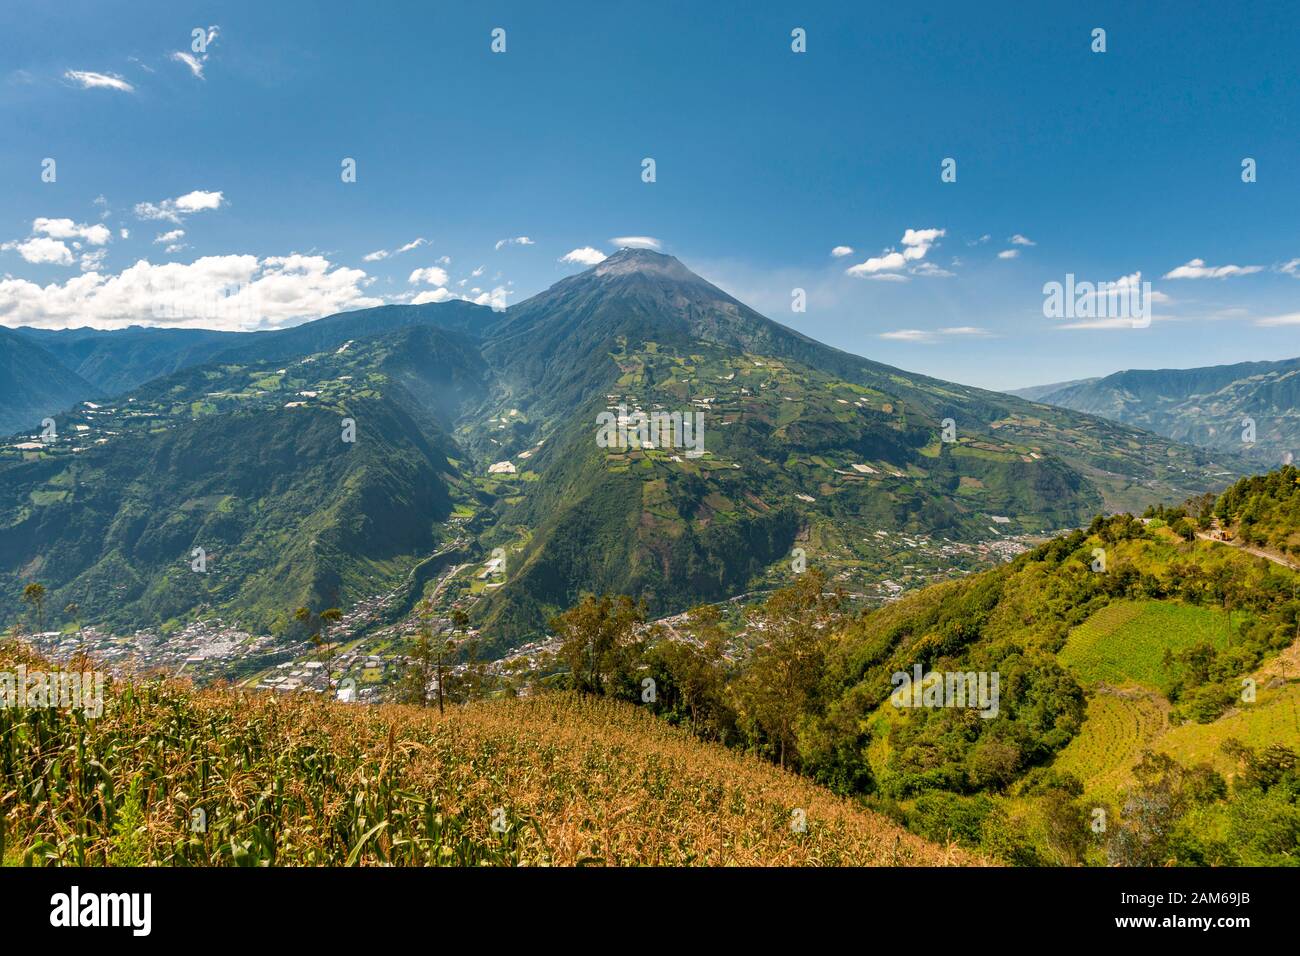 View of the town of Baños de Agua Santa and Tungurahua volcano (5023m) in Ecuador. Stock Photo